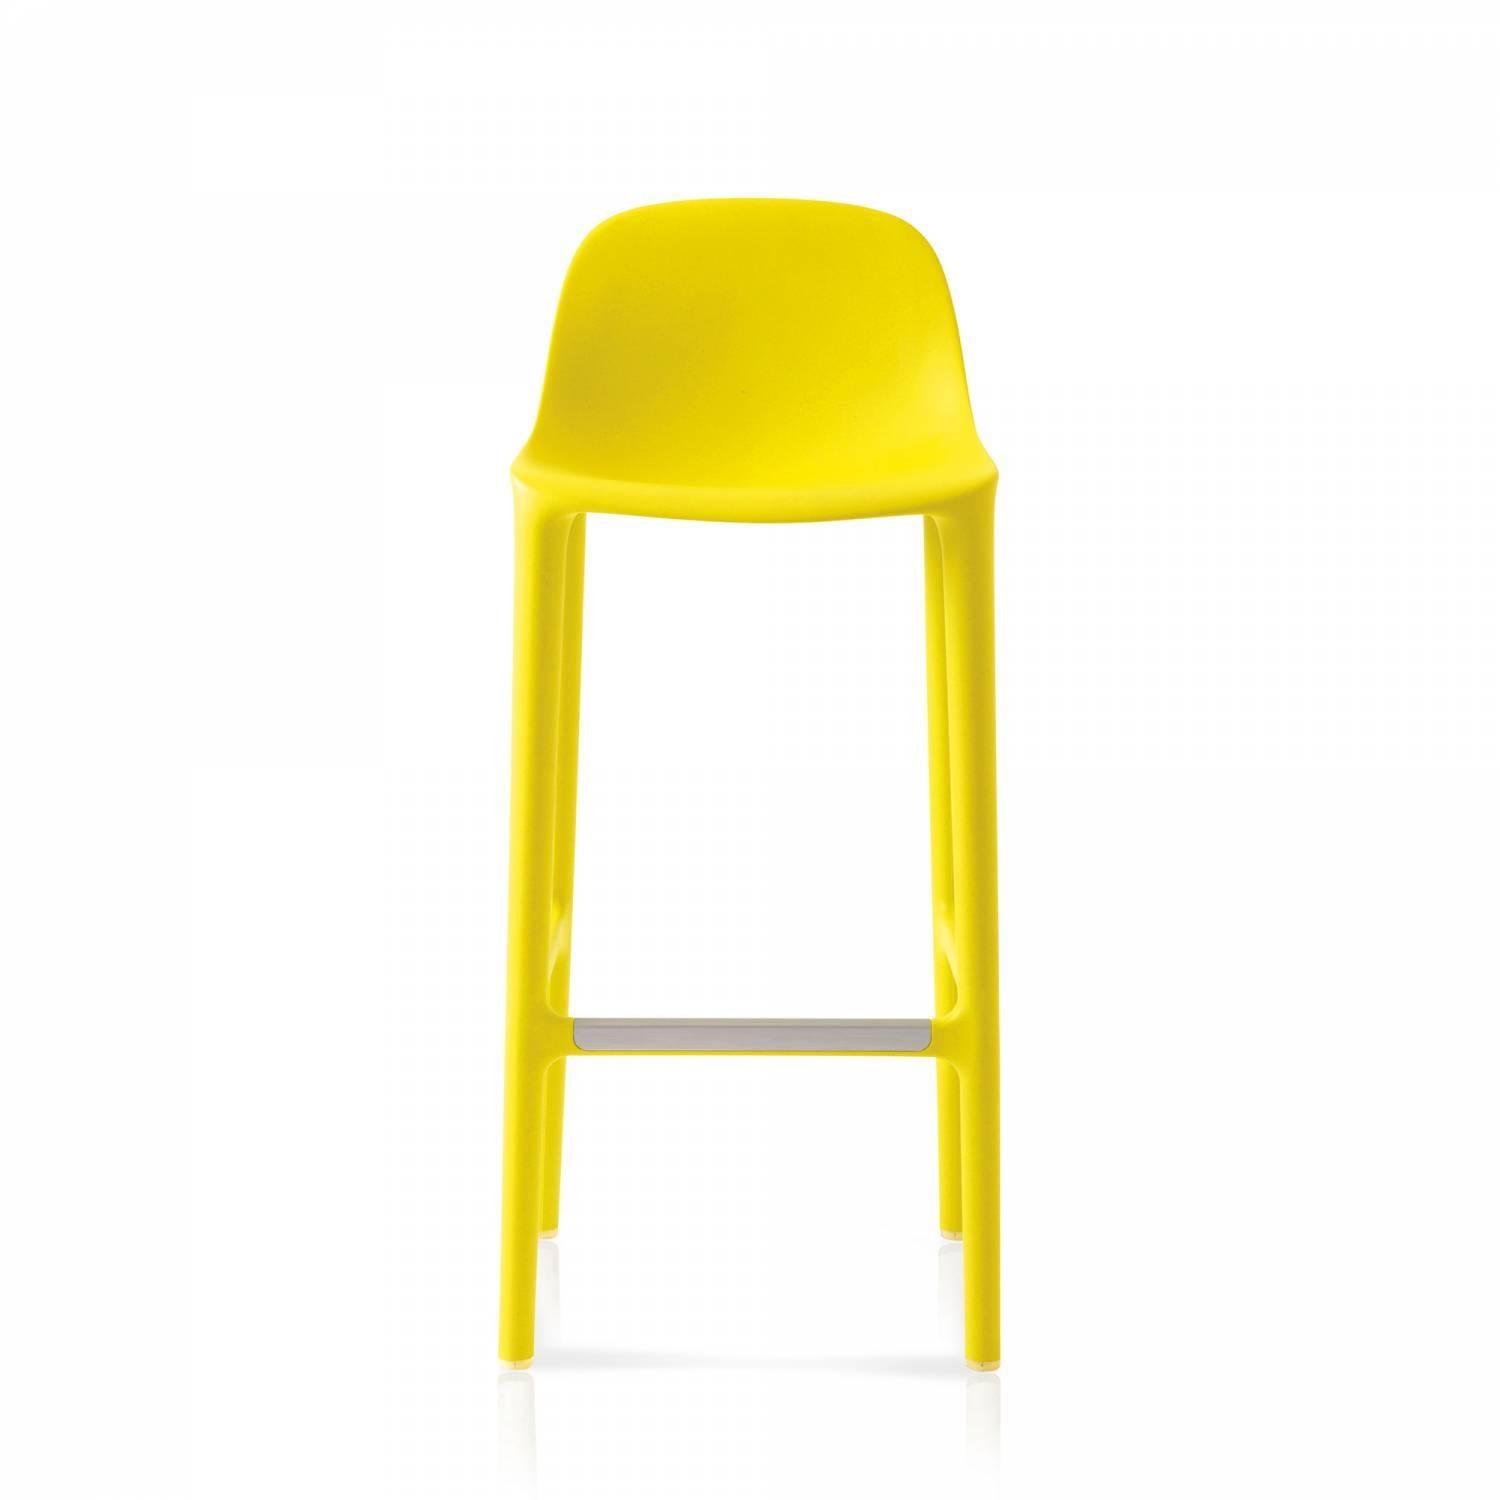 Philippe Starck und Emeco haben sich zusammengetan, um einen neuen Stuhl zu entwerfen, der aus recycelten Materialien besteht, wiederverwendet werden kann und für eine lange Lebensdauer konzipiert ist. Der Stuhl besteht zu 75 % aus